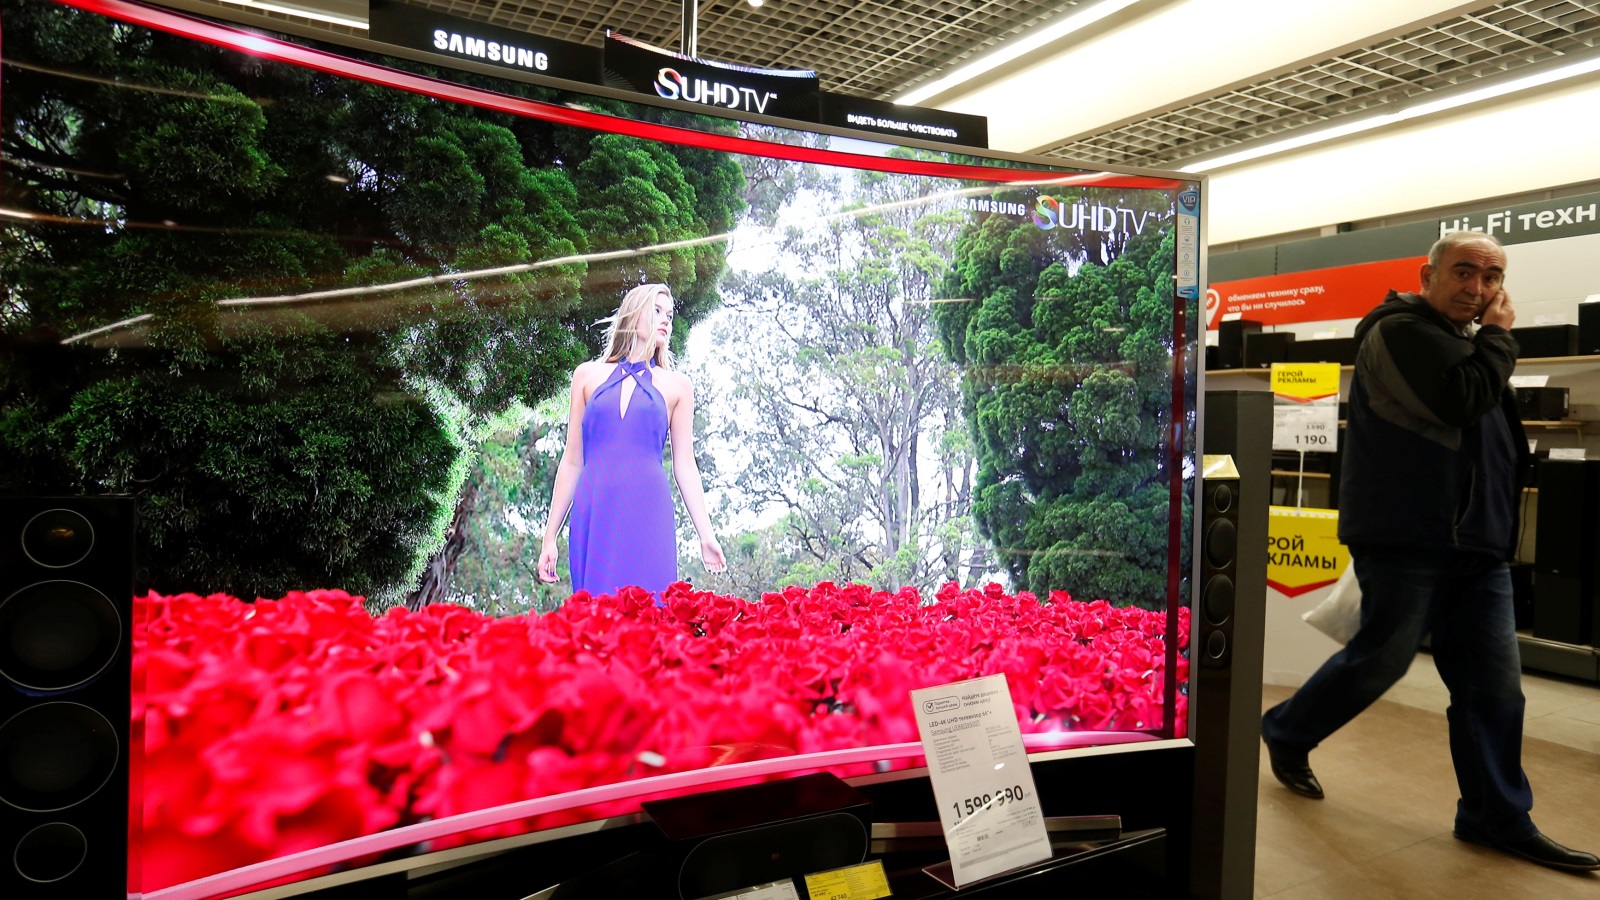 ‪سامسونغ تعتبر الشركة الأولى في مبيعات التلفزيونات الذكية في العالم‬ (رويترز)